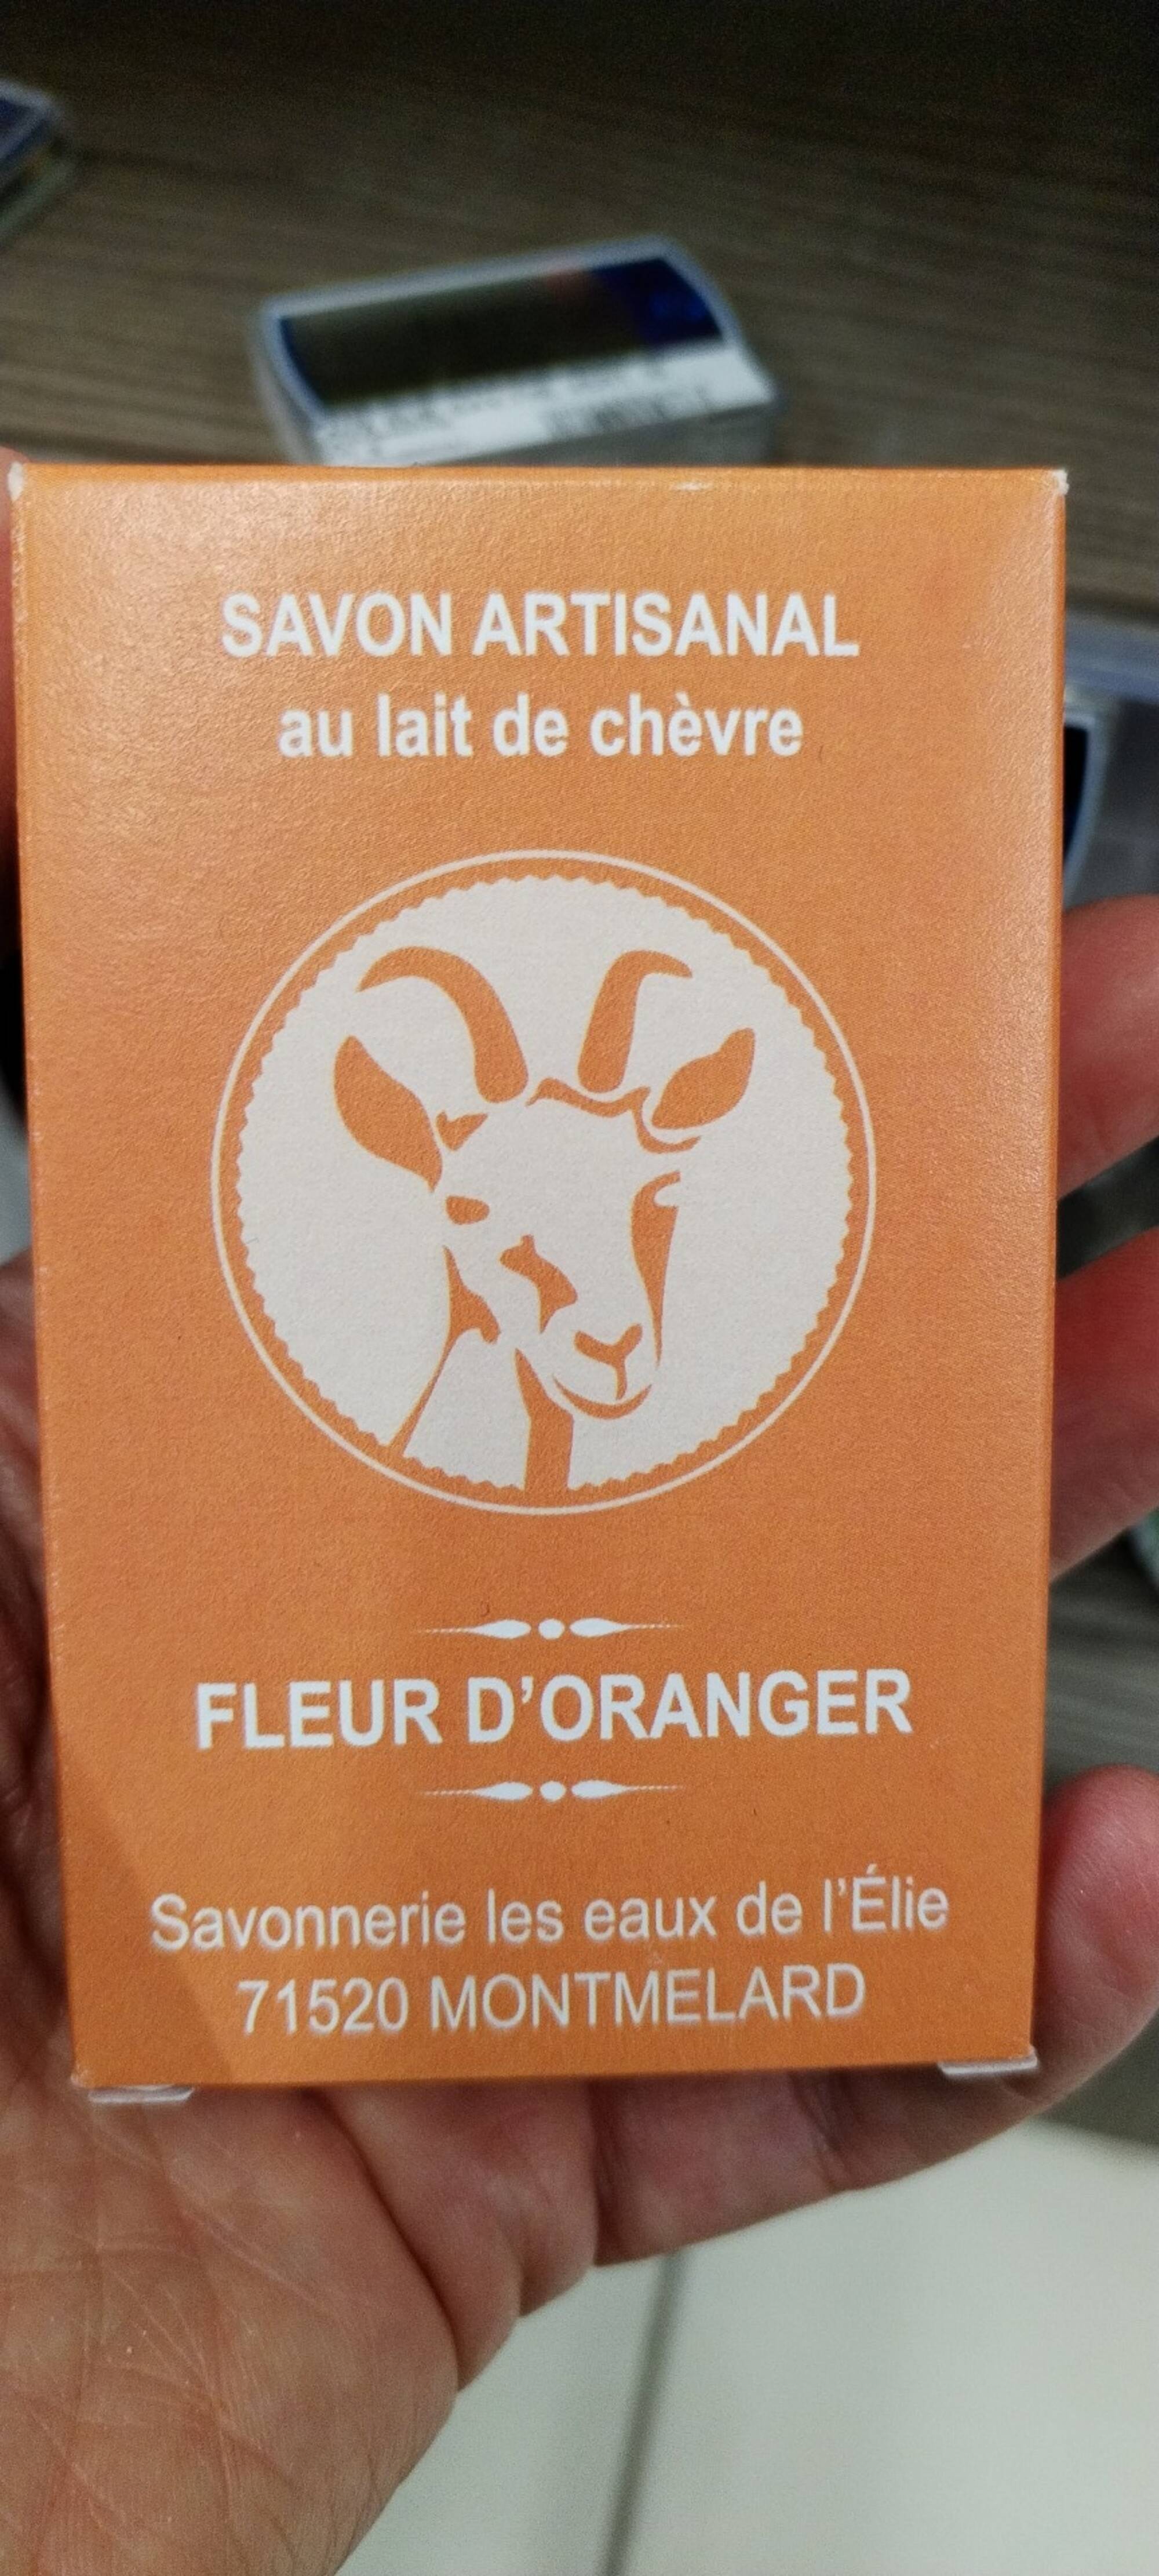 SAVONNERIE LES EAUX DE L'ELIE - Fleur d'oranger - Savon artisanal au lait de chèvre